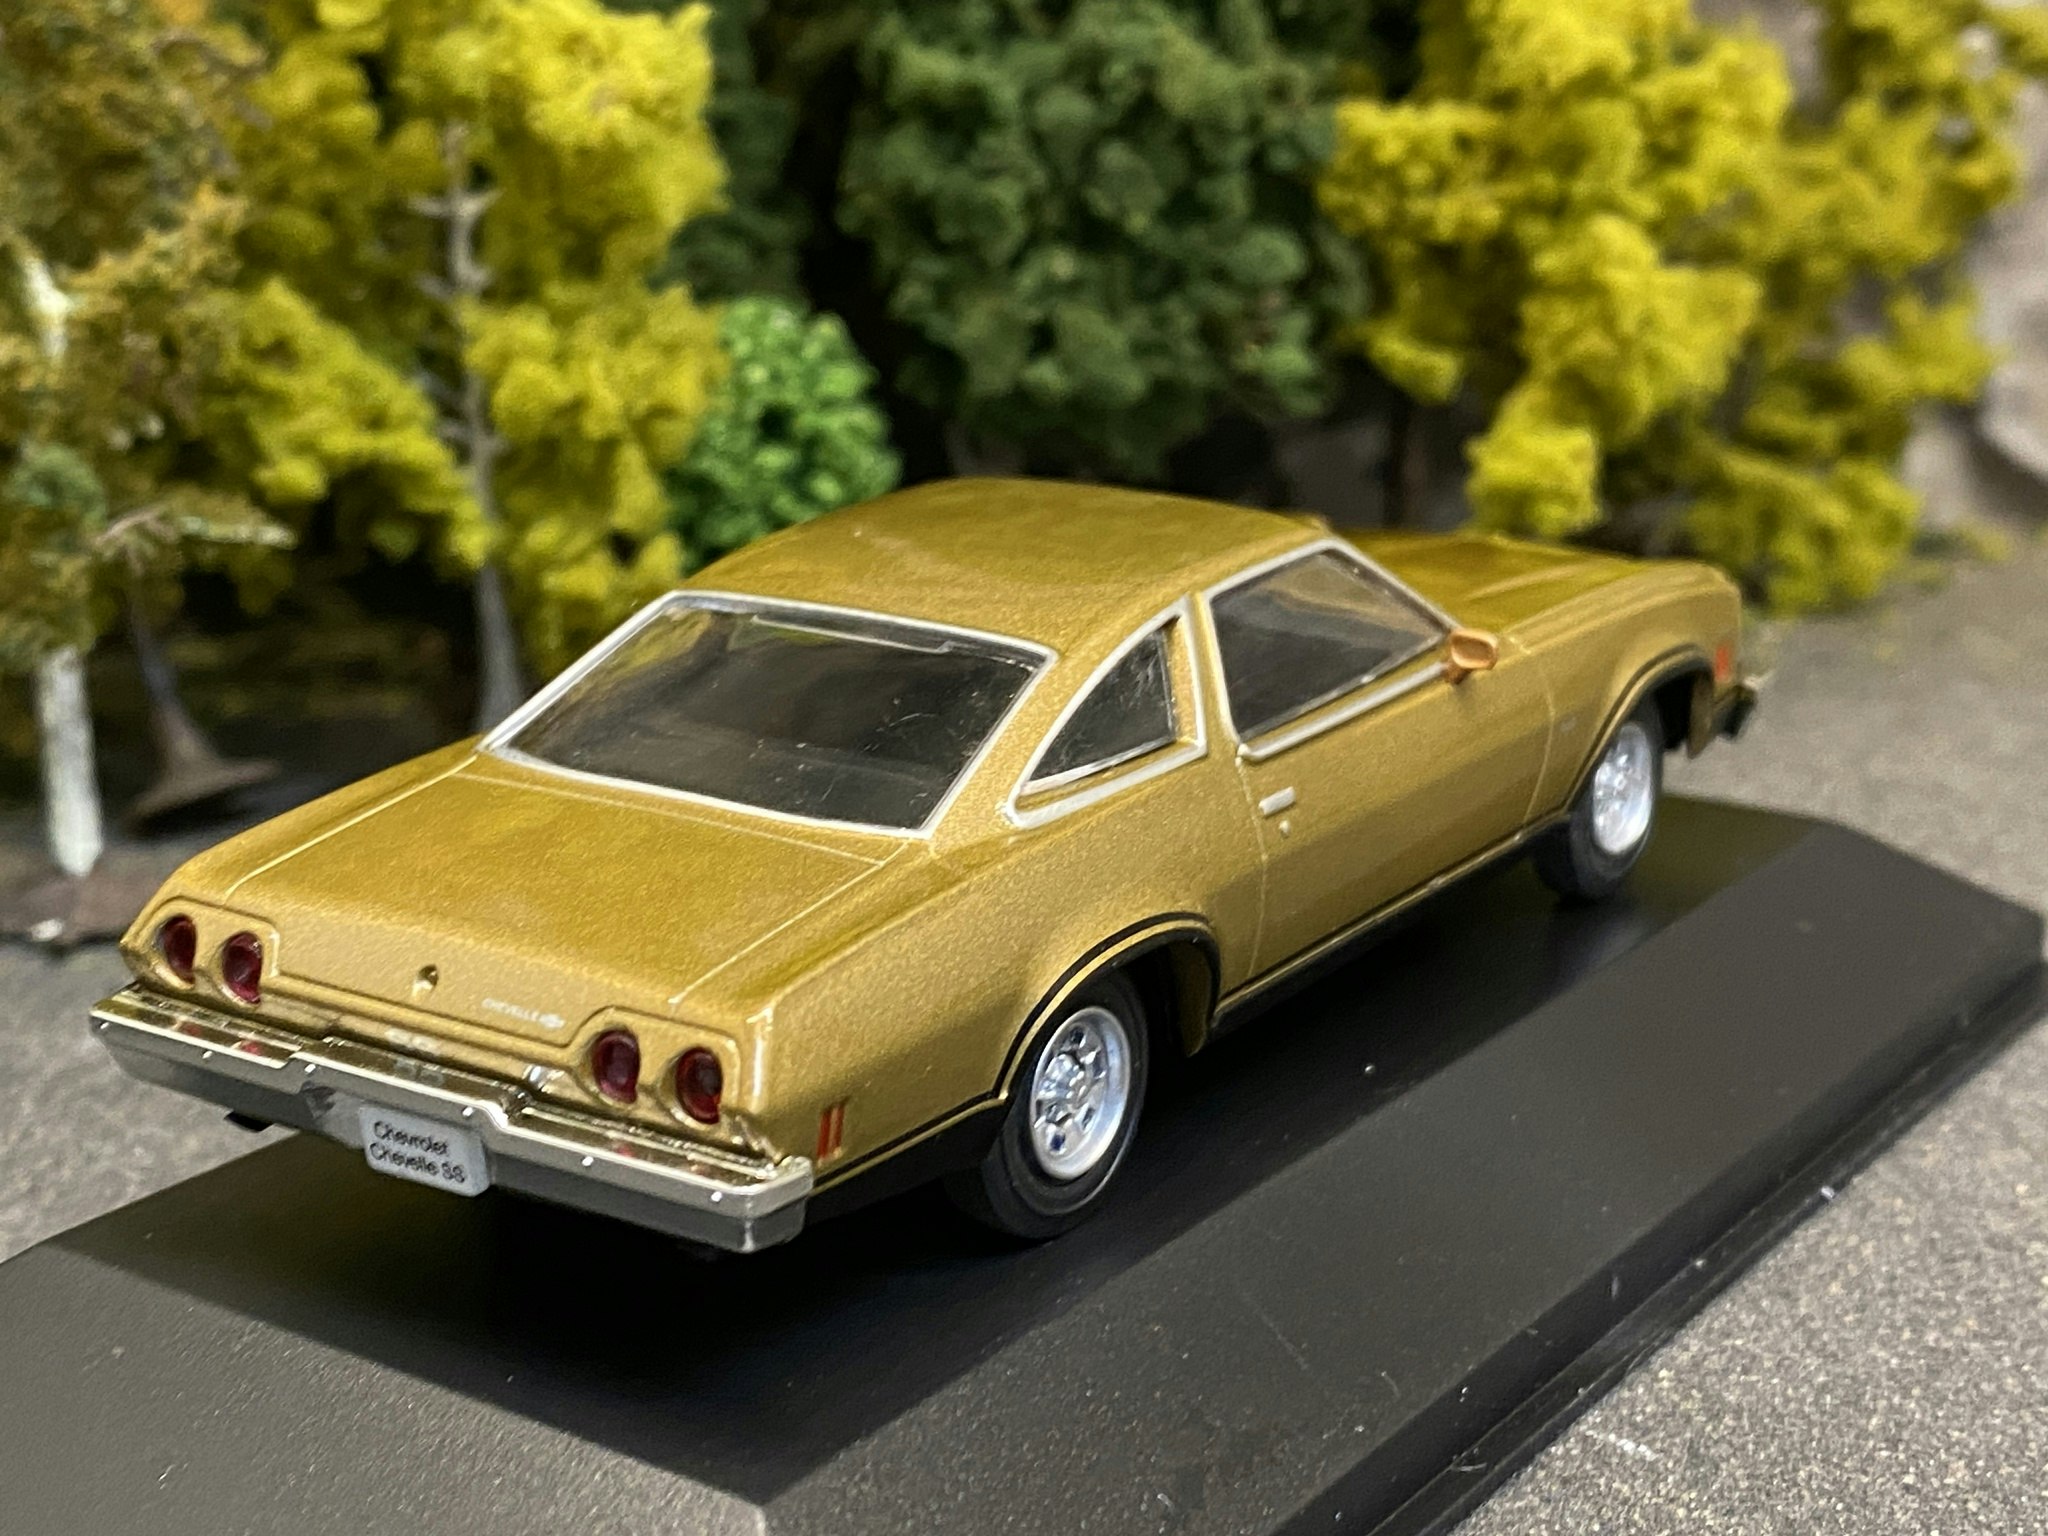 Skala 1/43: Chevrolet Chevelle SS 1973' fr DeAgostini